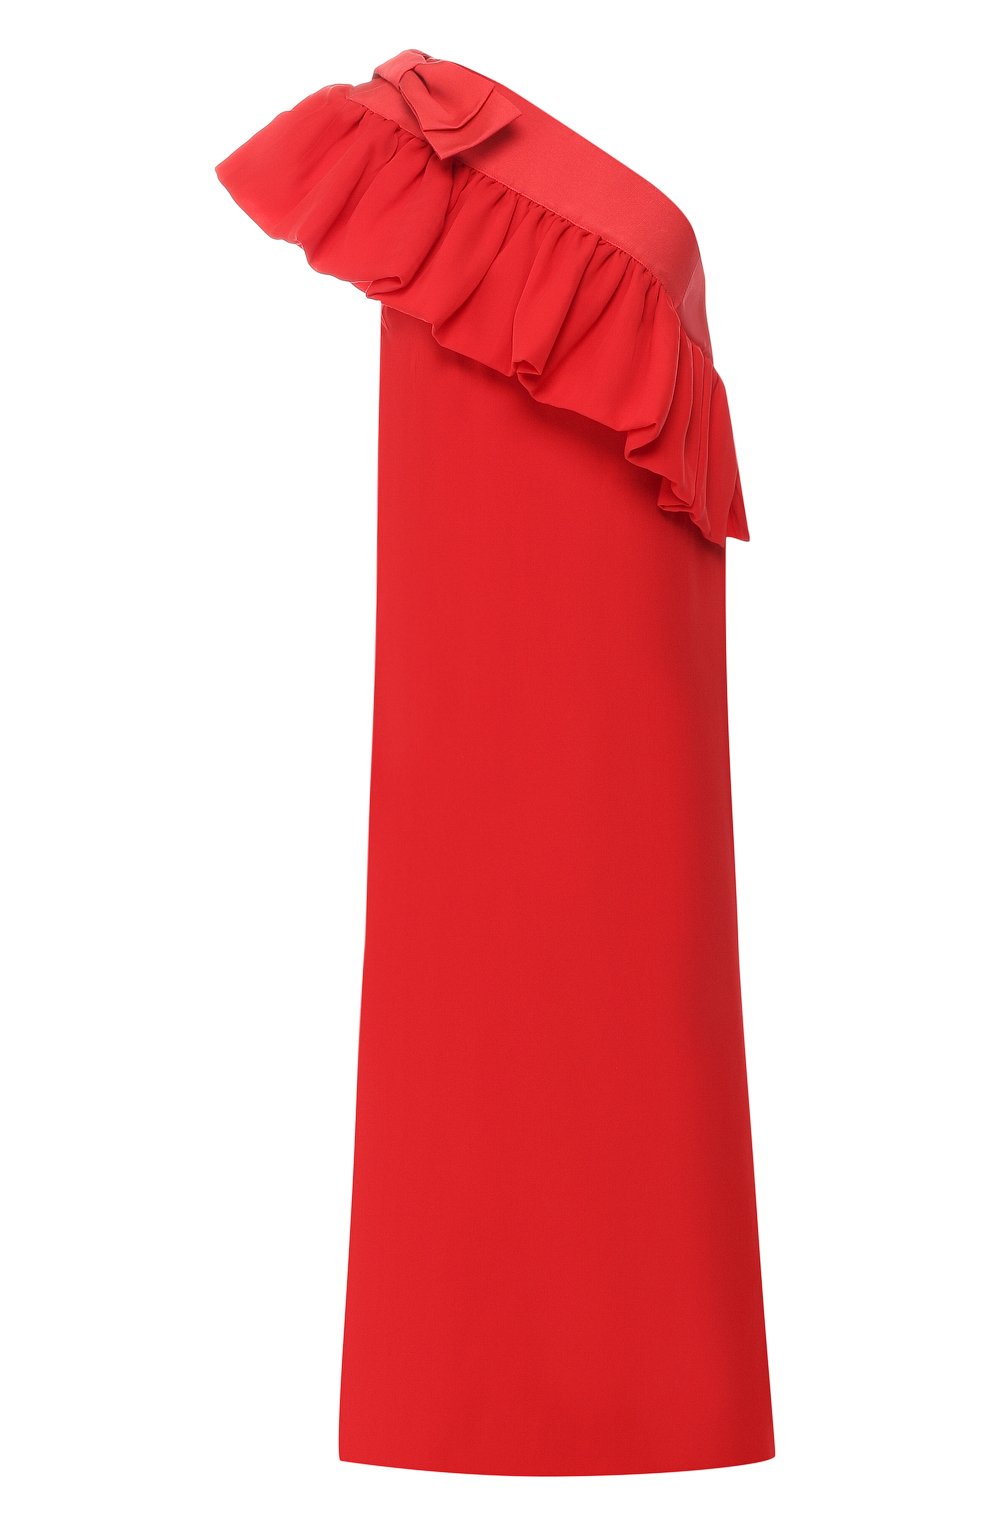 Платья Mother Of Pearl, Шелковое платье Mother Of Pearl, Португалия, Красный, Шелк: 100%;, 7415400  - купить